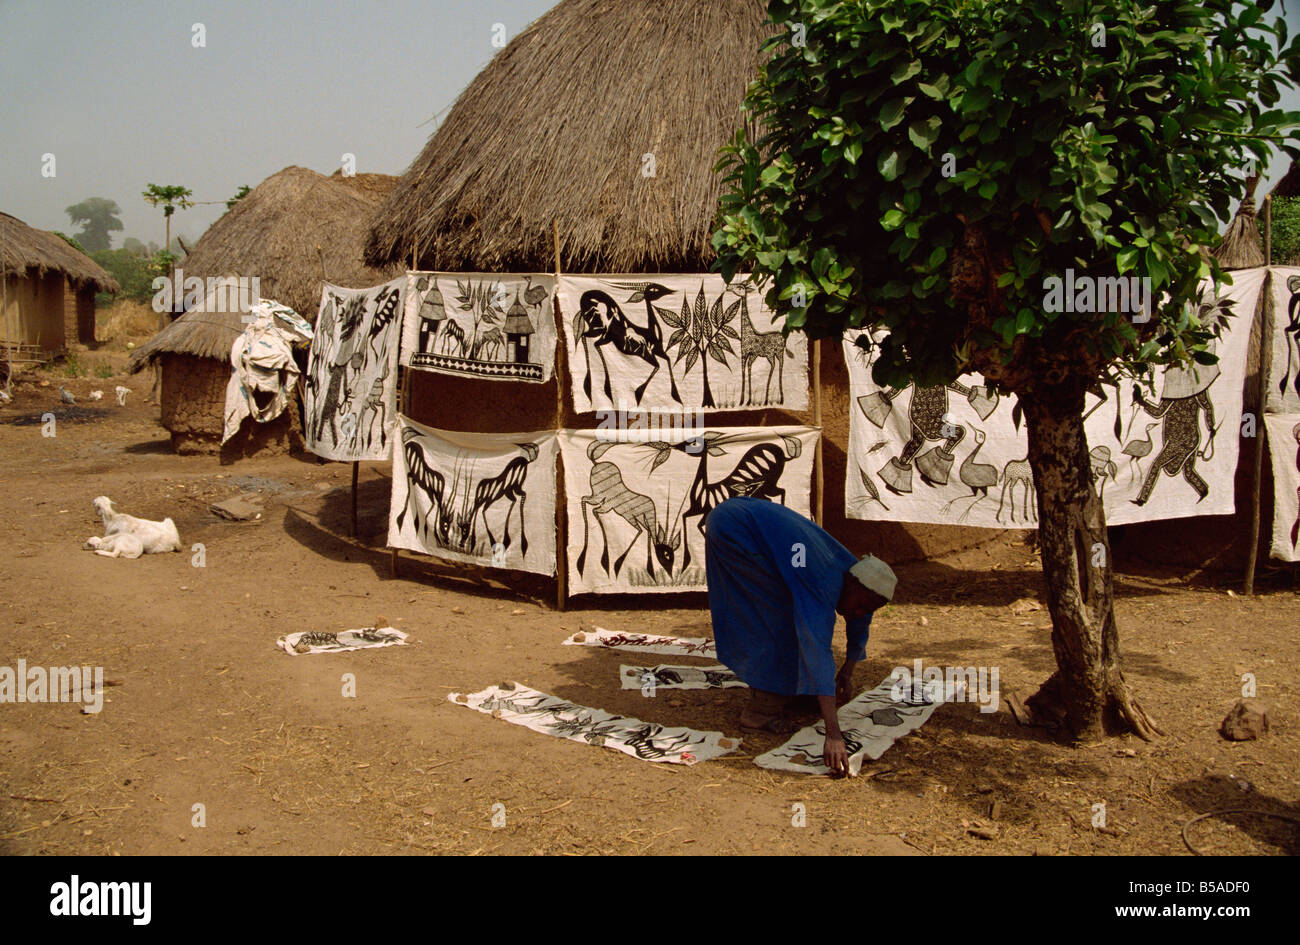 Batiks hanging on line dans village près de Korhogo Côte d'Ivoire Afrique Afrique de l'Ouest Banque D'Images